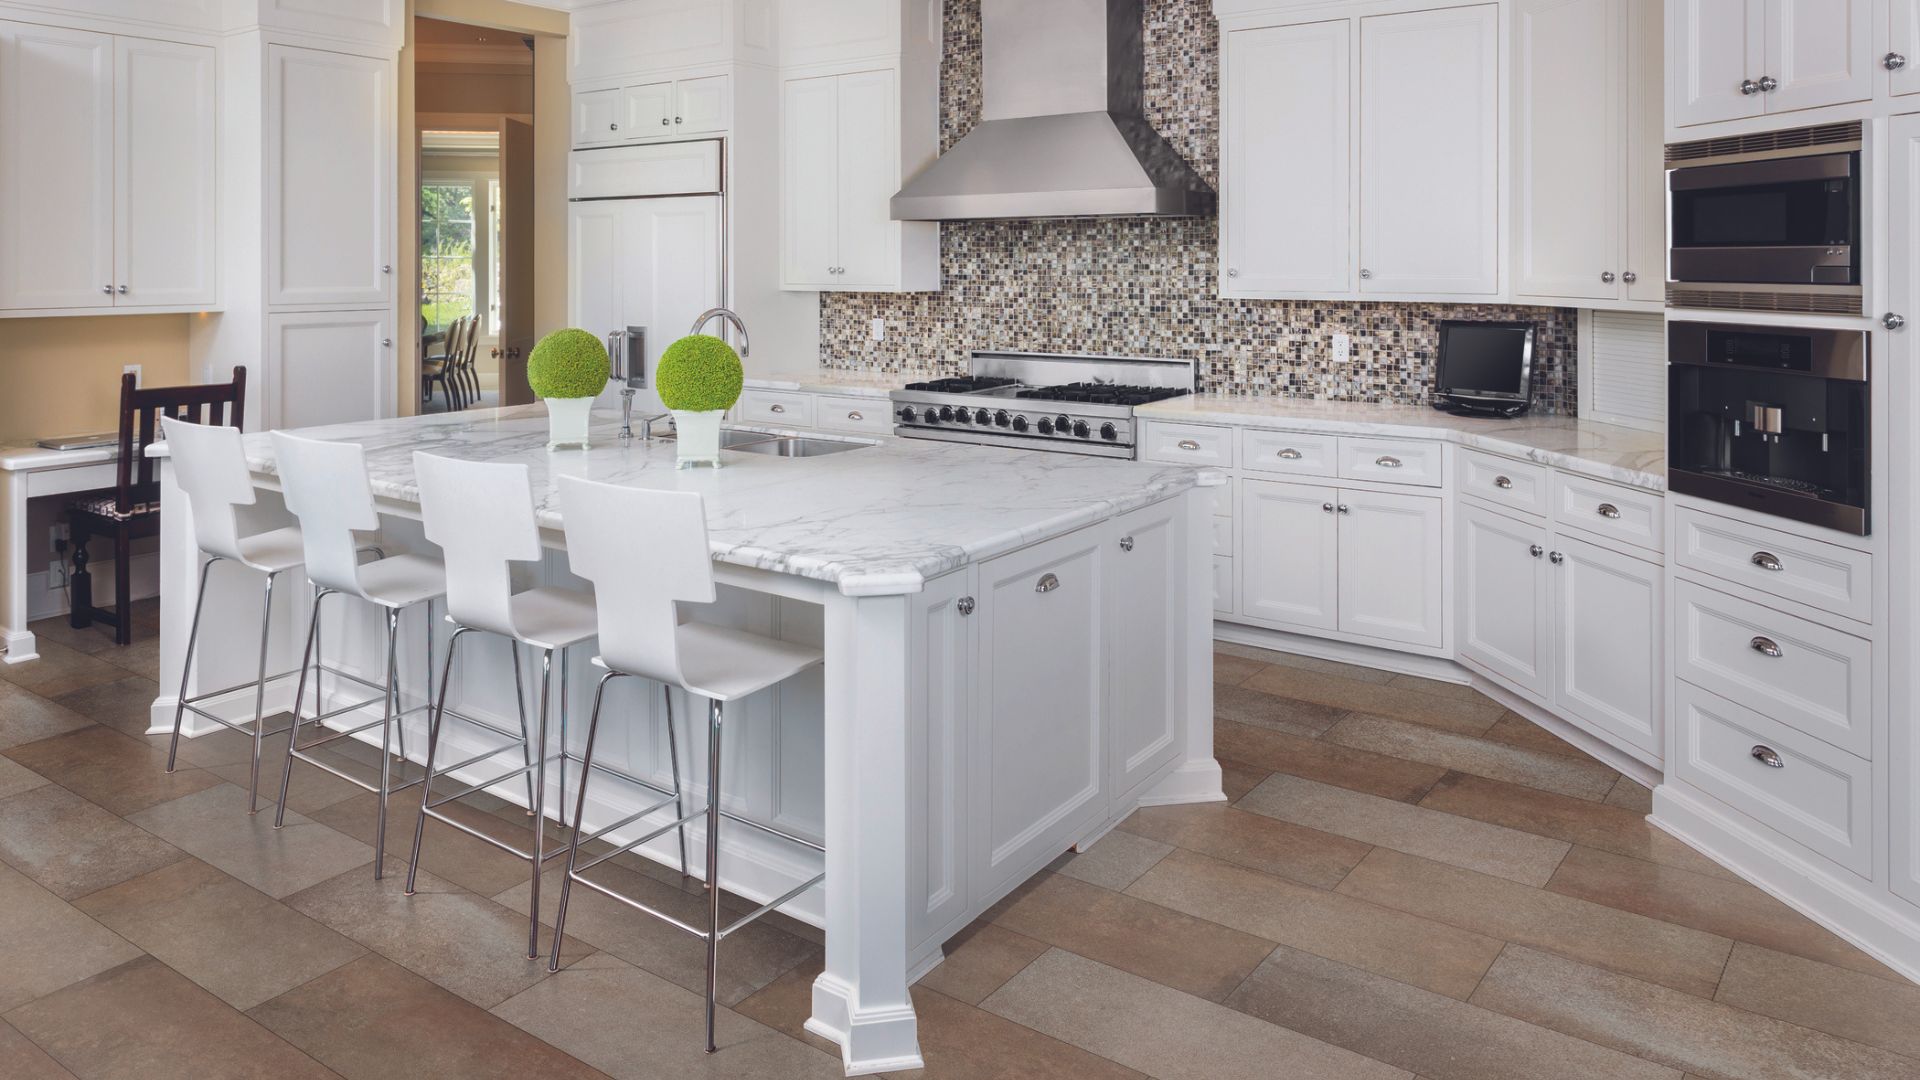 Luxury vinyl tile floors in a kitchen.